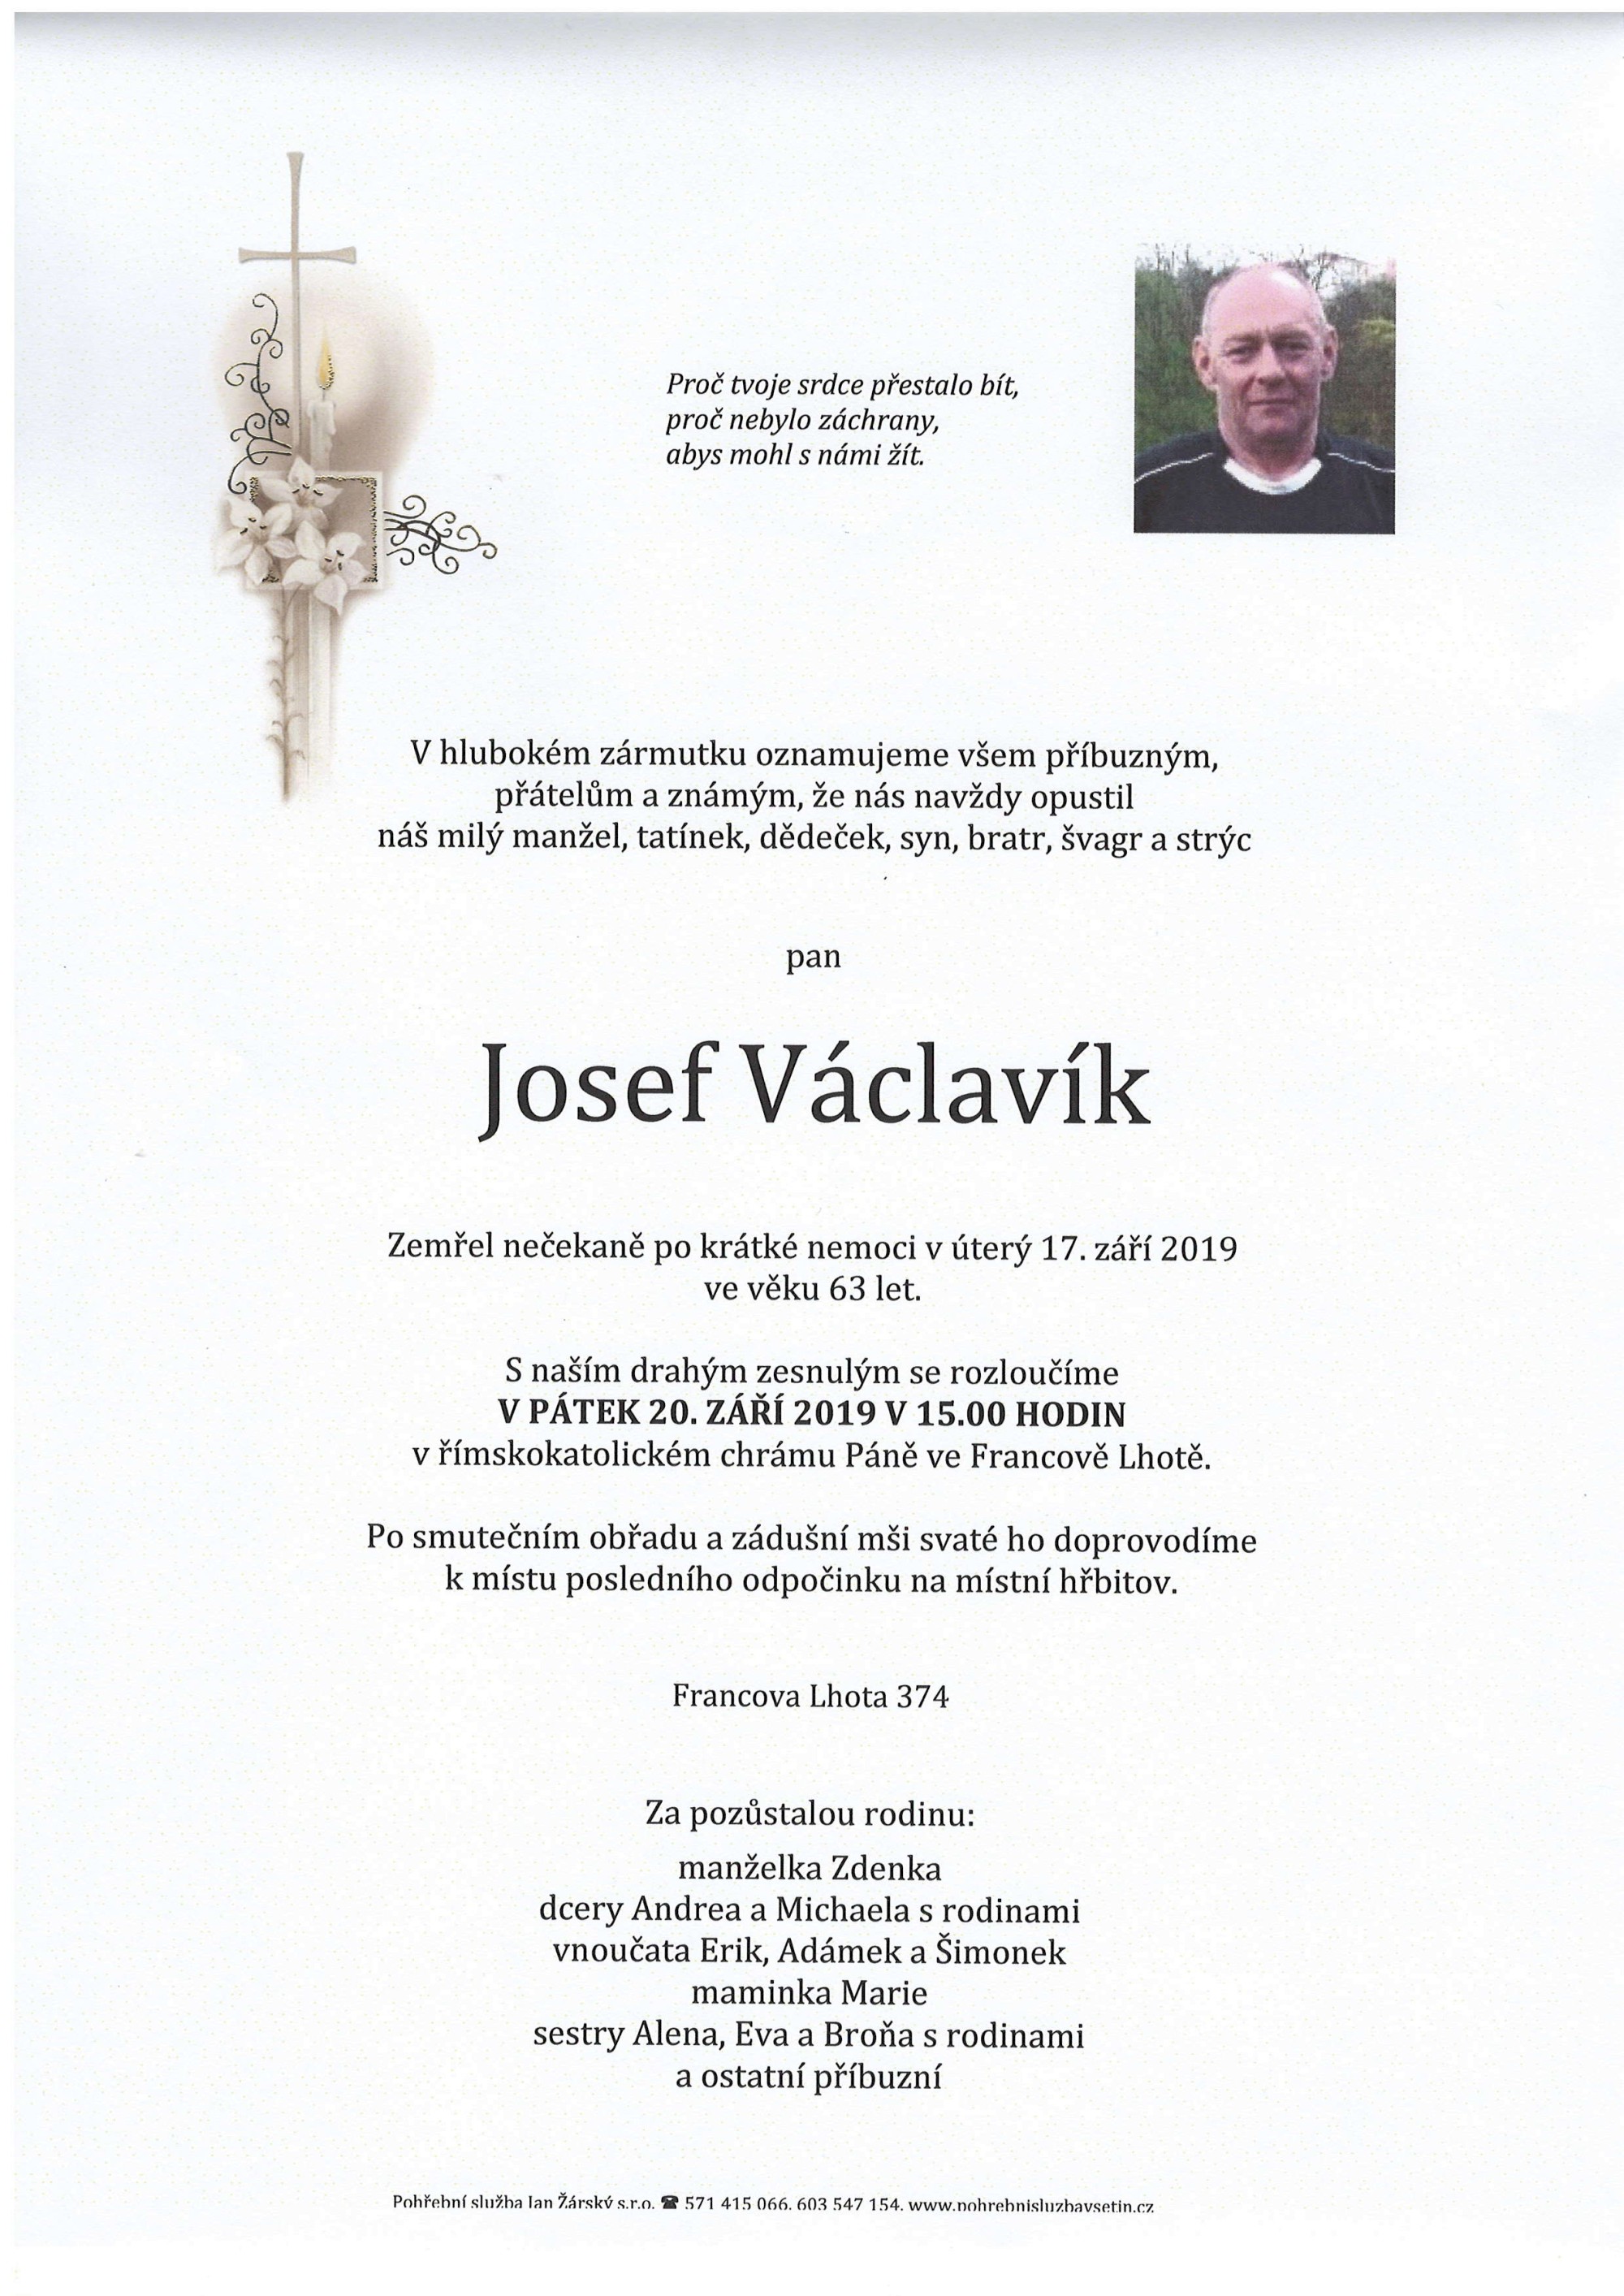 Josef Václavík